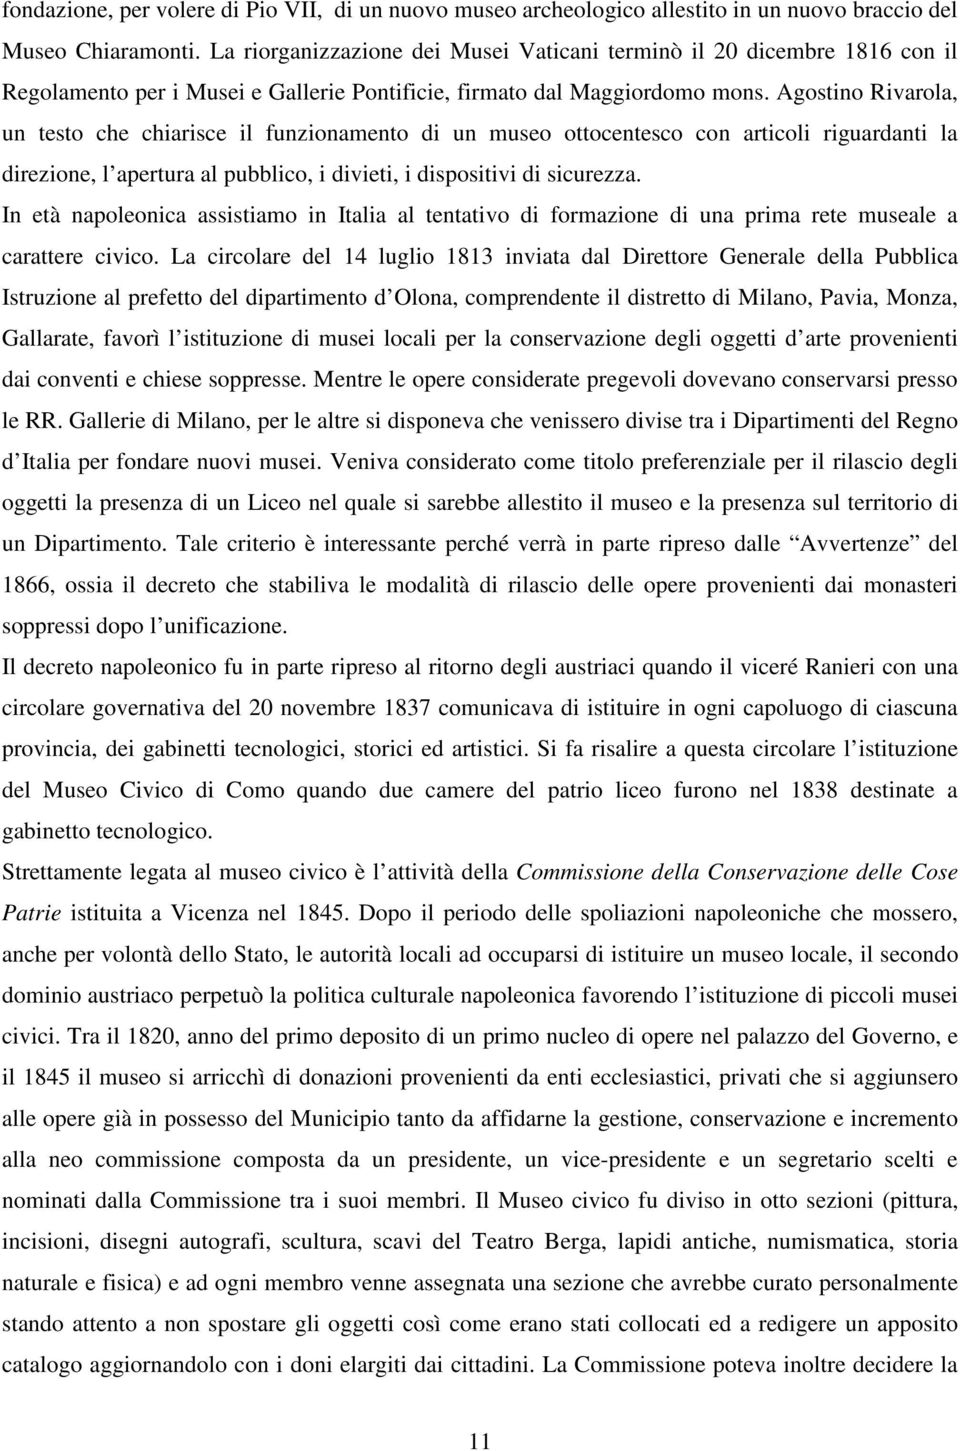 Agostino Rivarola, un testo che chiarisce il funzionamento di un museo ottocentesco con articoli riguardanti la direzione, l apertura al pubblico, i divieti, i dispositivi di sicurezza.